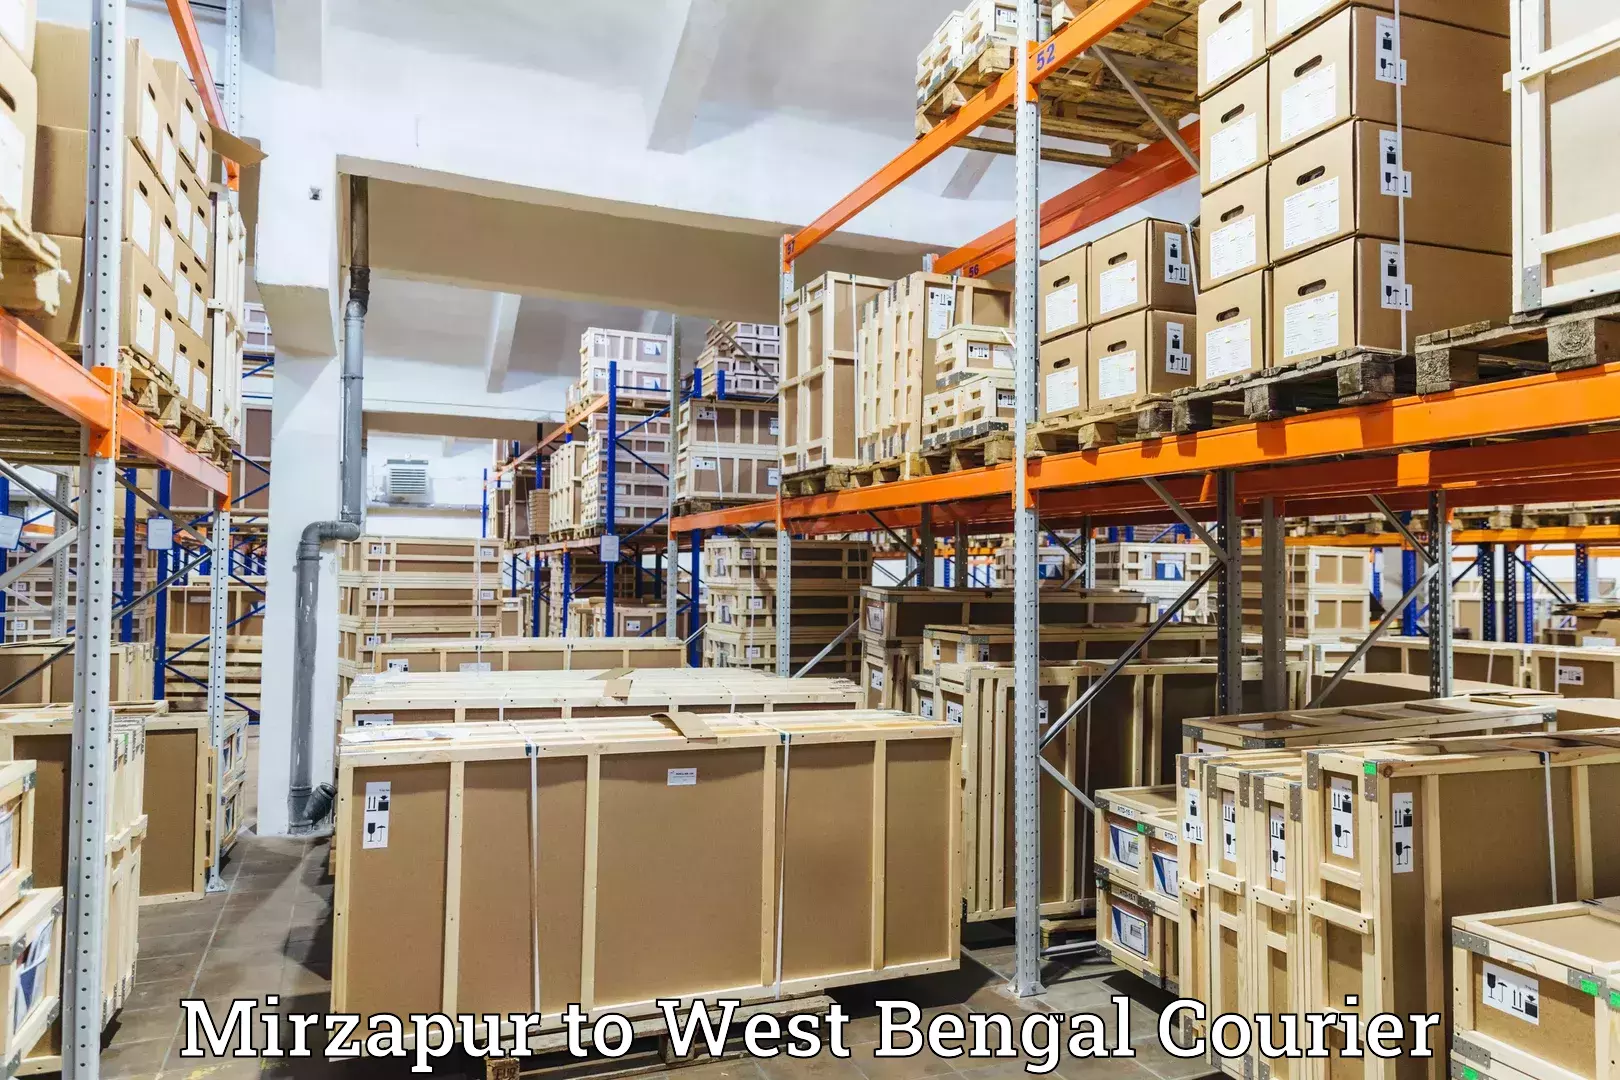 24/7 courier service Mirzapur to Dakshin Dinajpur